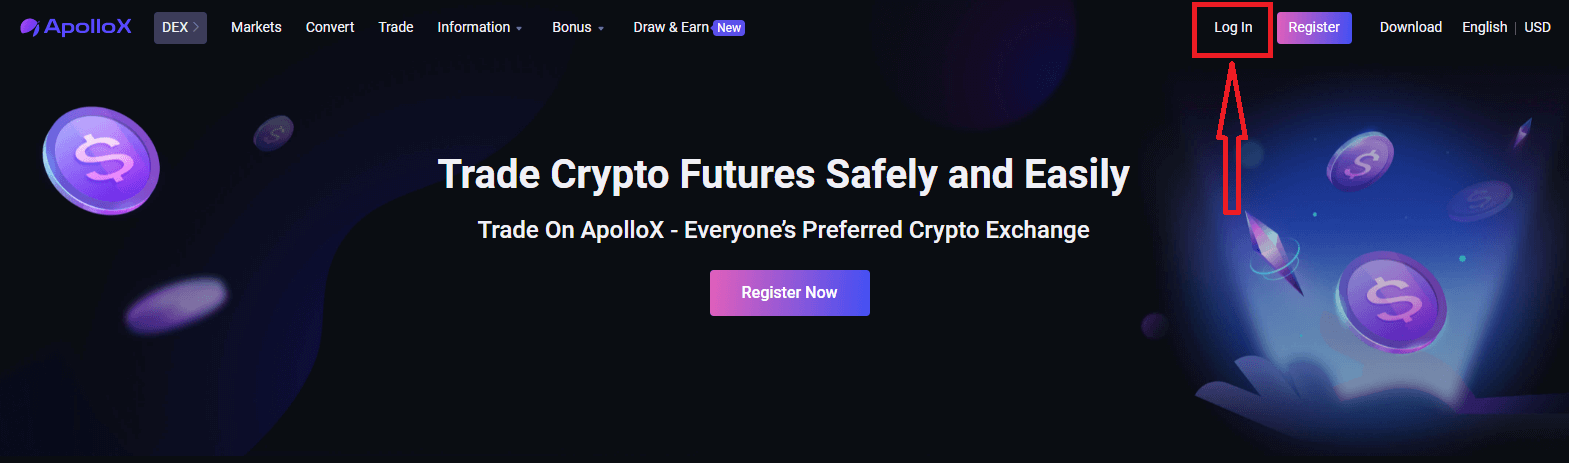 Bagaimana untuk Log Masuk dan mula berdagang Crypto di ApolloX